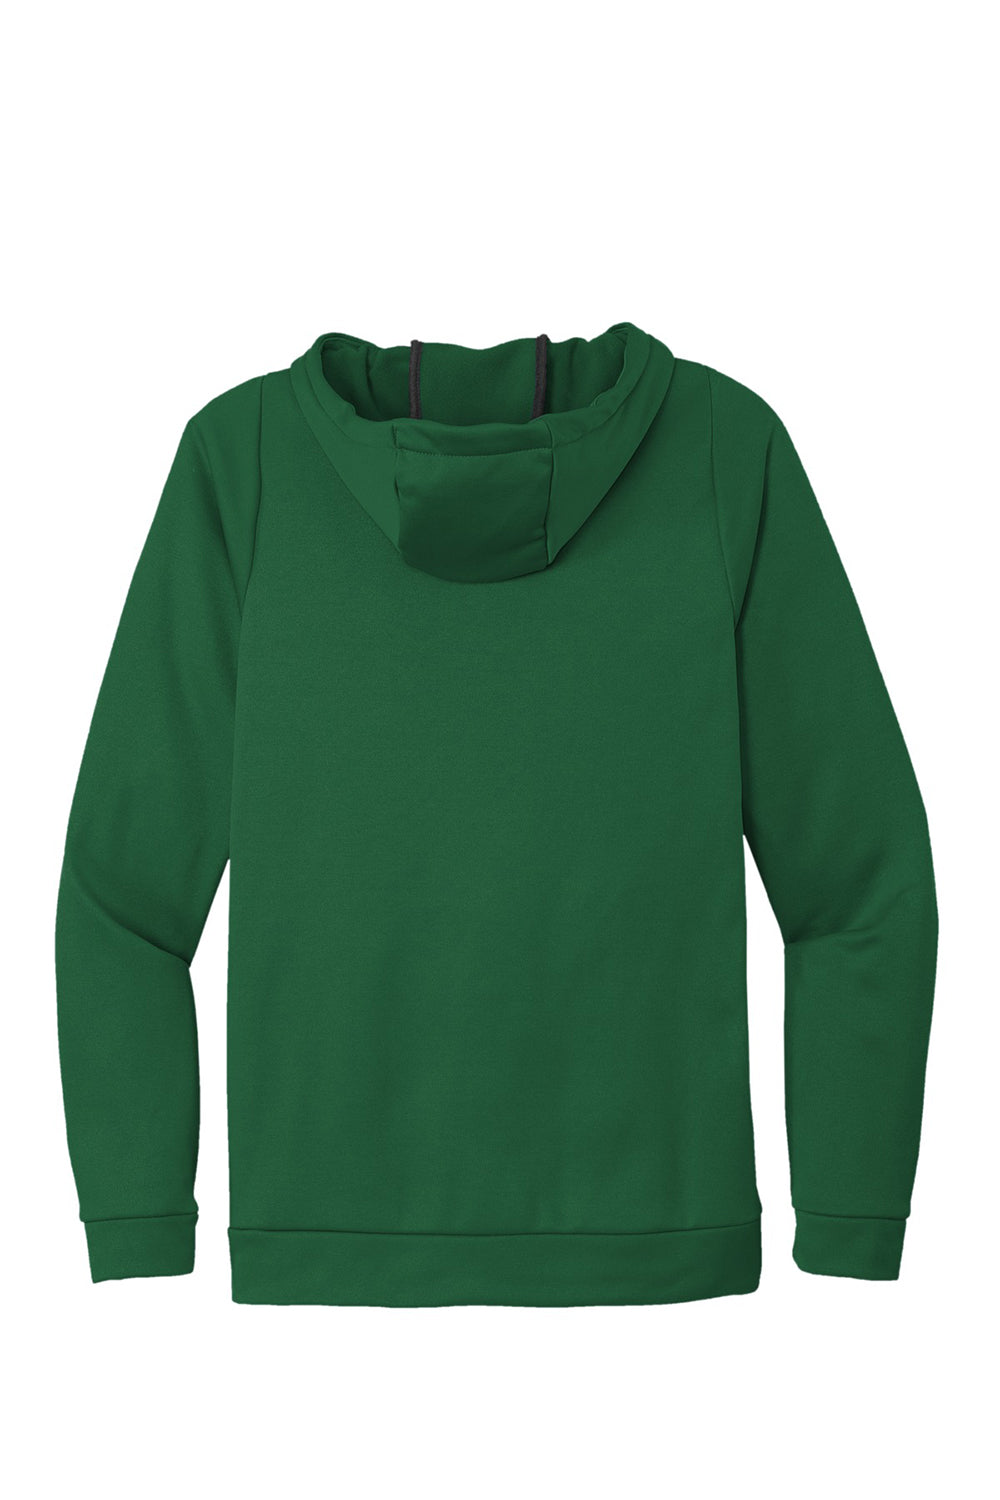 Nike CN9473 Mens Therma-Fit Moisture Wicking Fleece Hooded Sweatshirt Hoodie Team Dark Green Flat Back